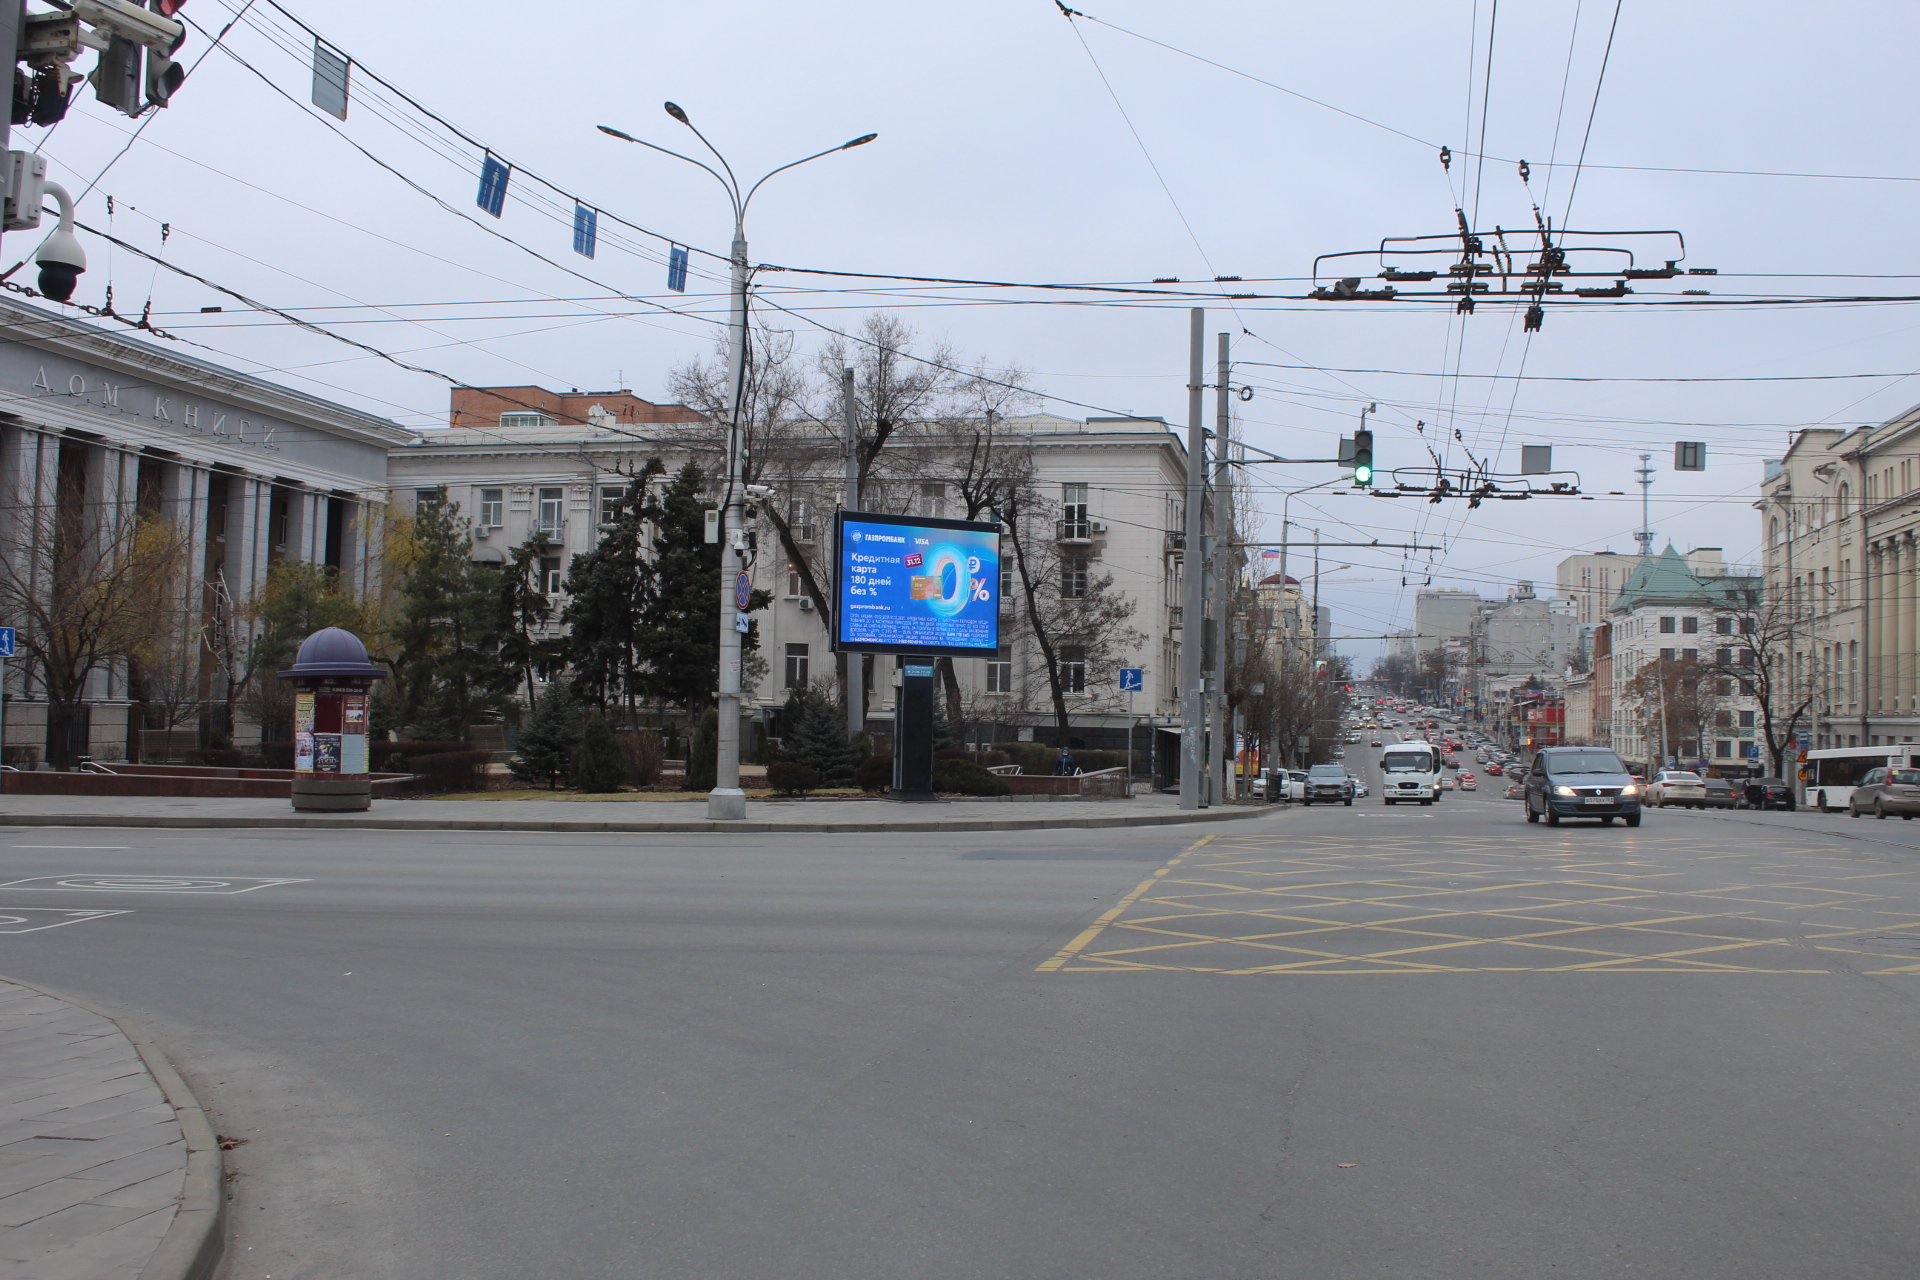 Ростов выбирает новые форматы наружной рекламы